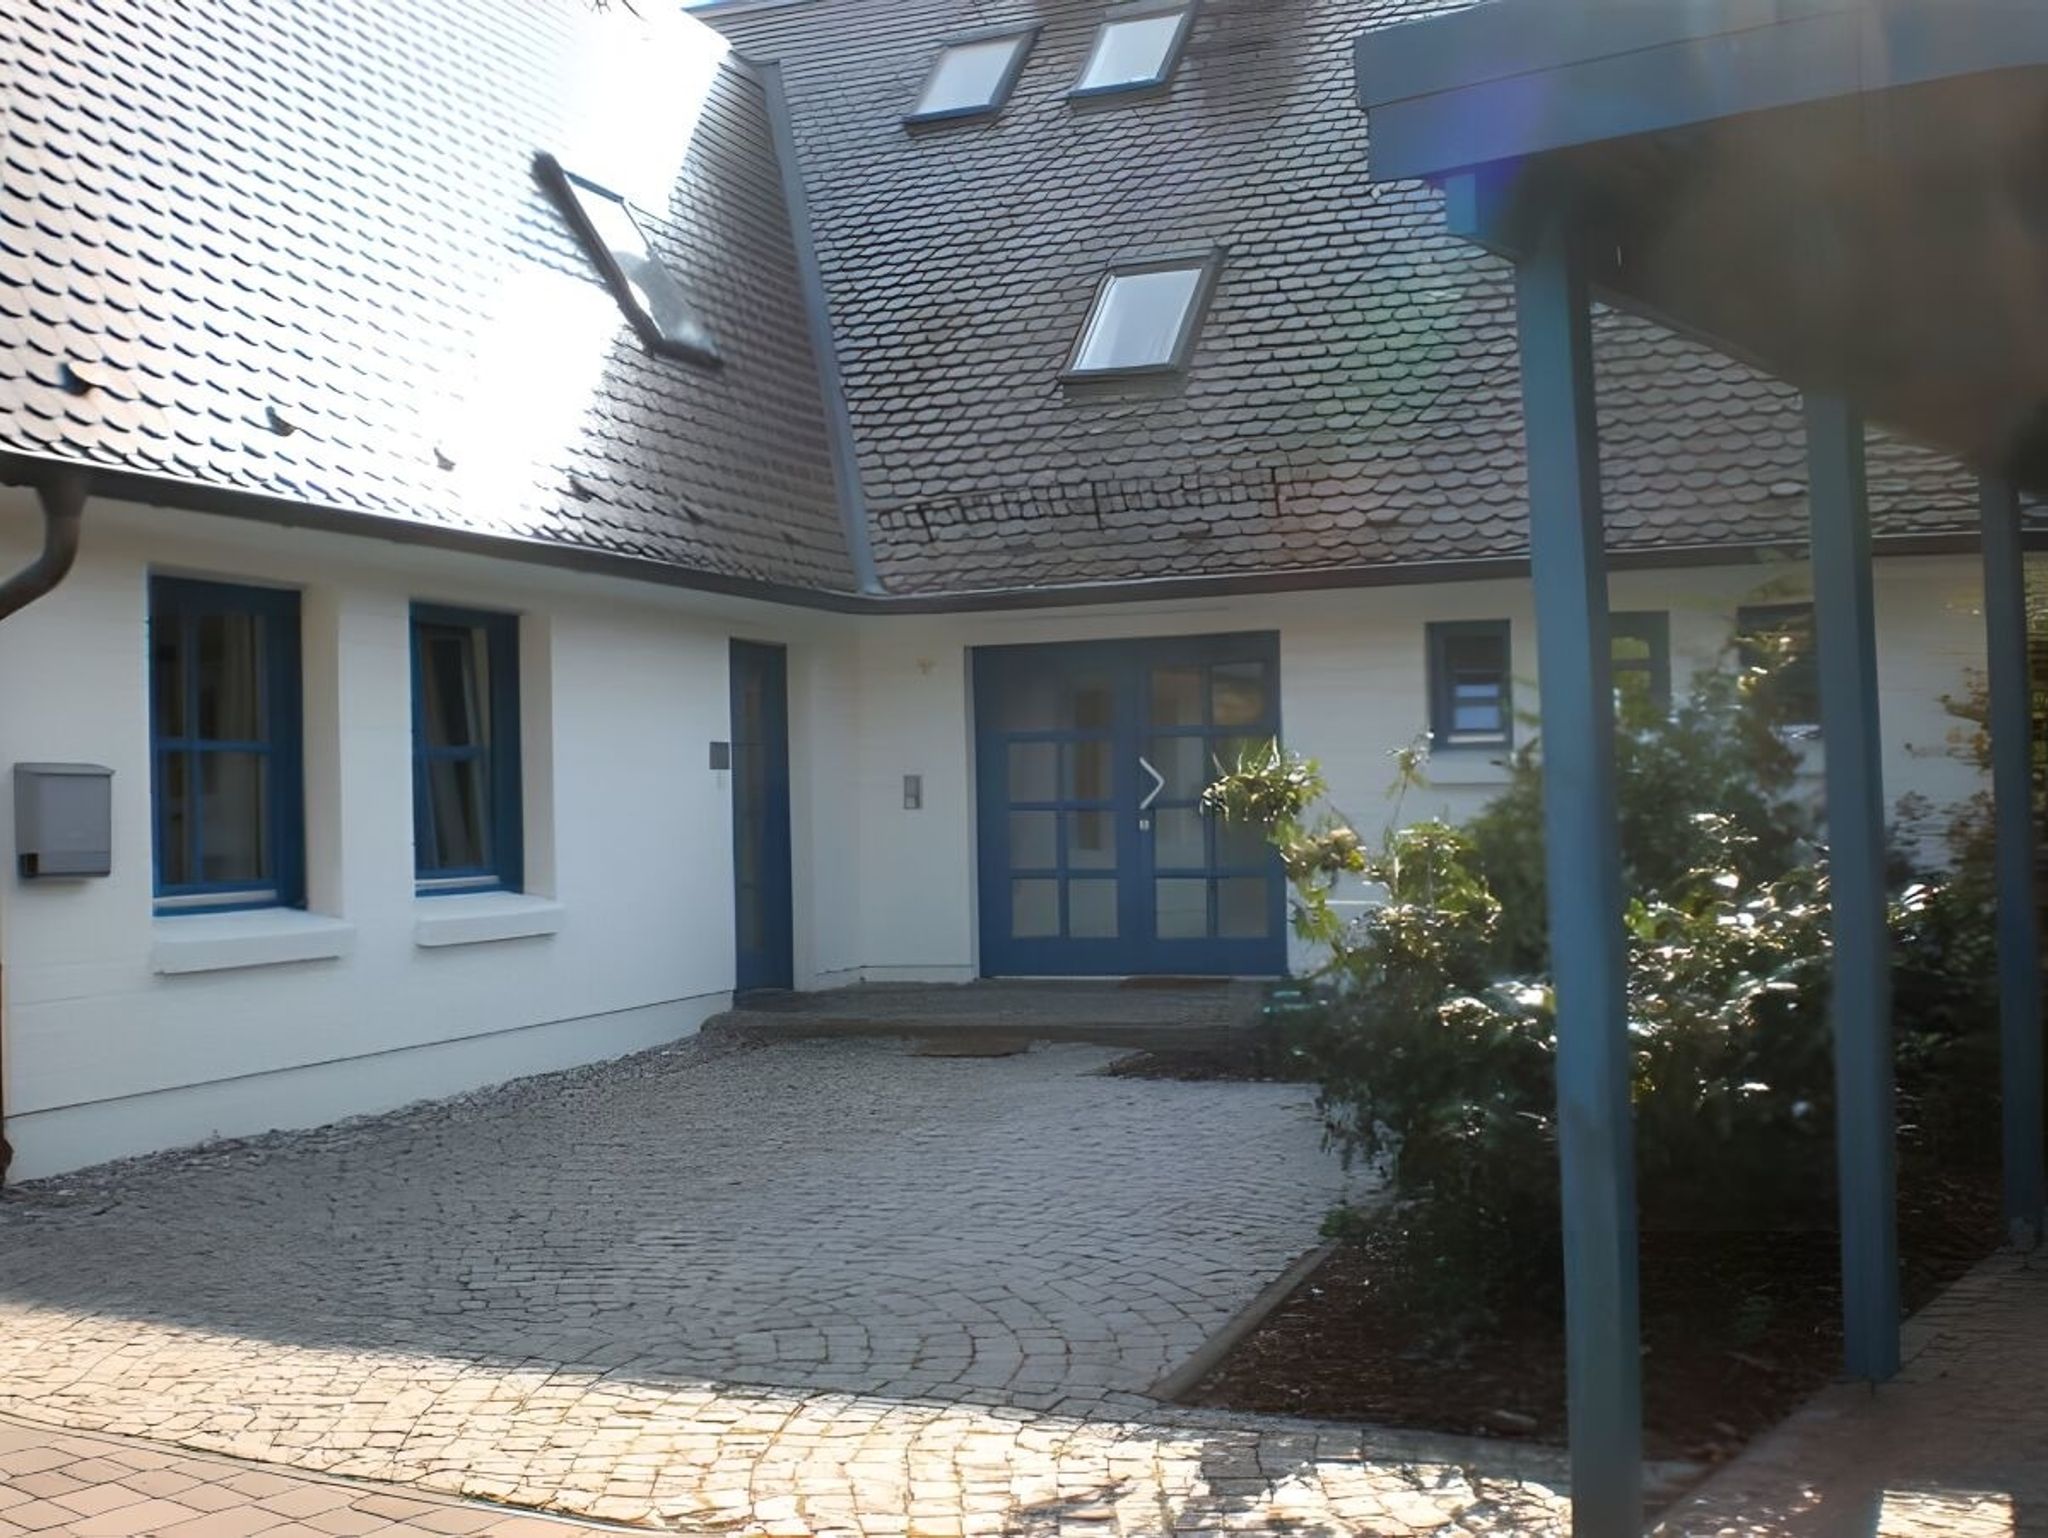 Doppelzimmer mit Gemeinschaftsbad für 2 Personen auf Rügen H4Zi3